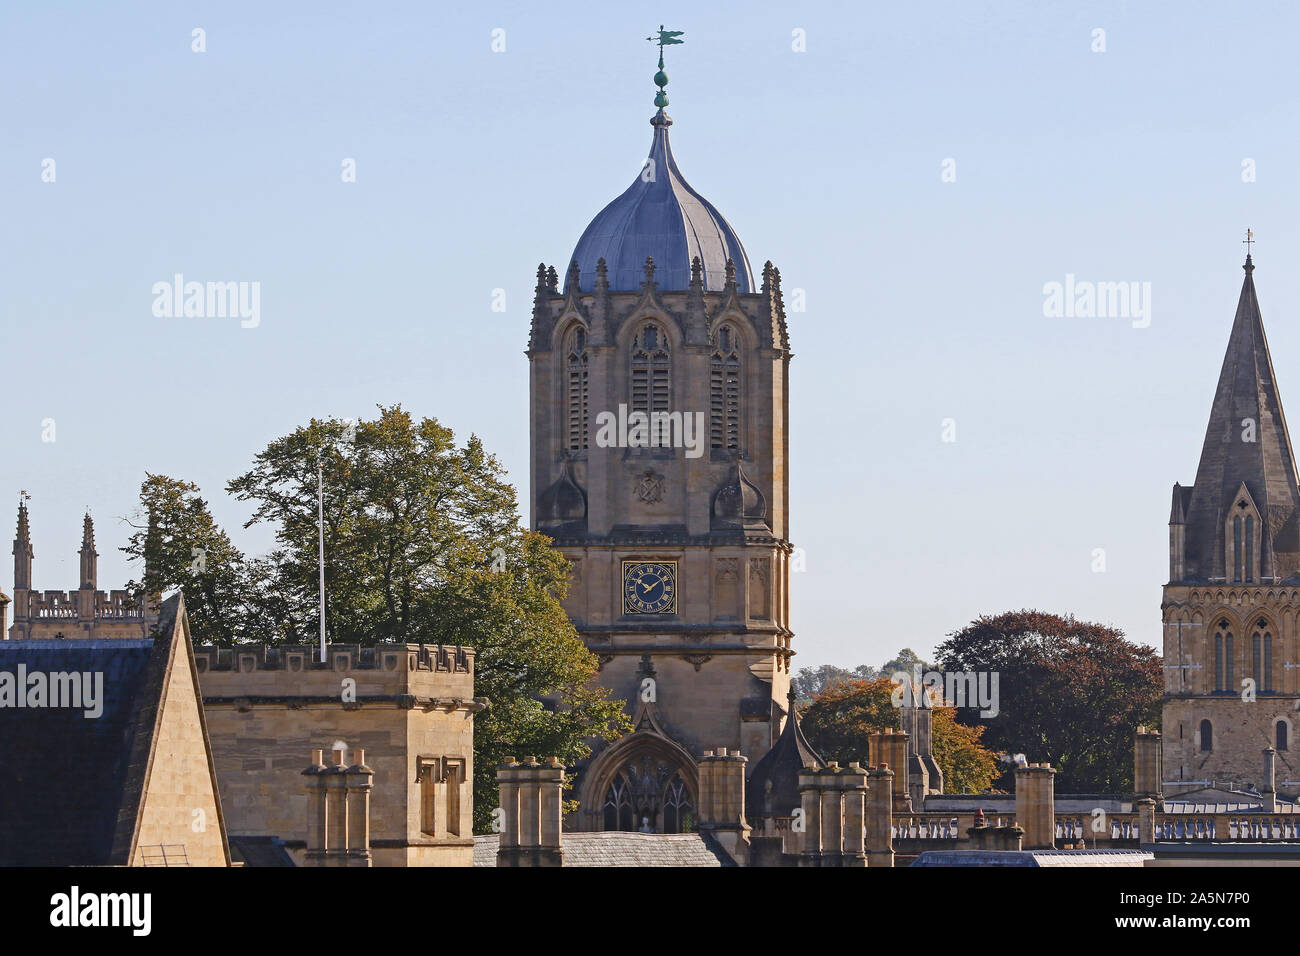 Der Glockenturm namens Tom Tower am Eingang zu Christ Church College in Oxford, vom Westgate gesehen. Die Uhr läuft immer 5 Minuten langsam Stockfoto